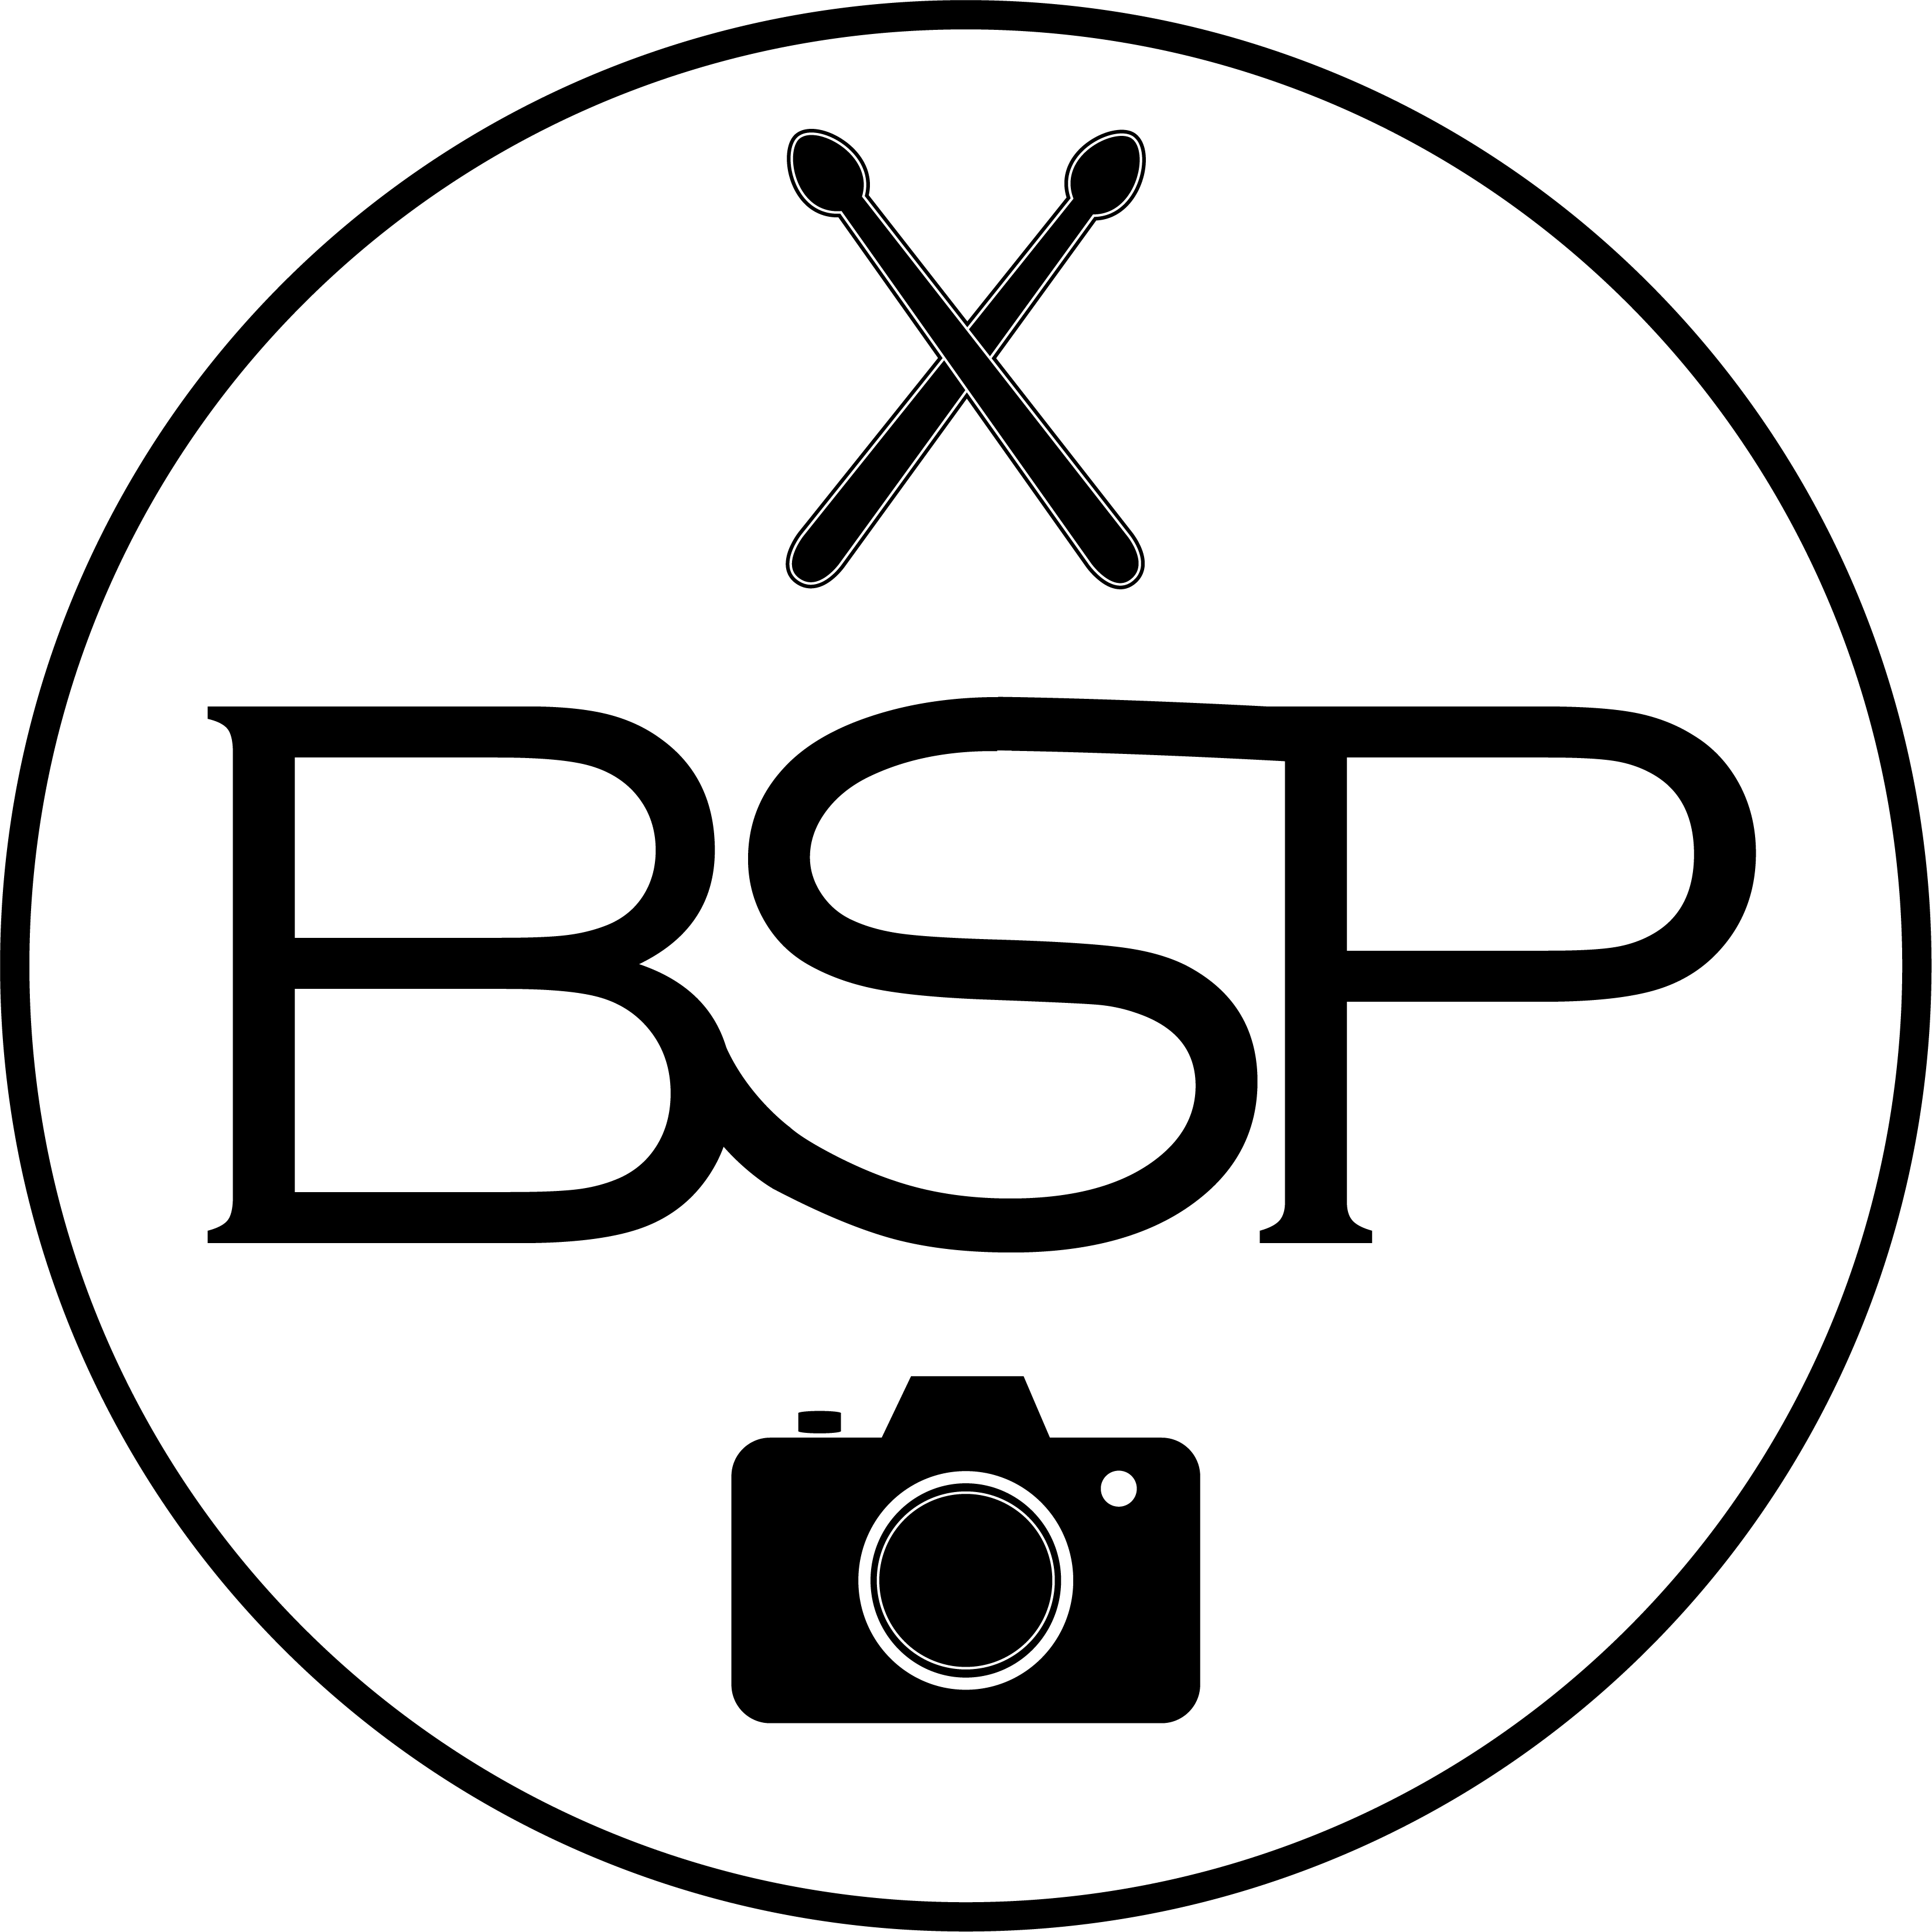 Brendan Shea Productions logo